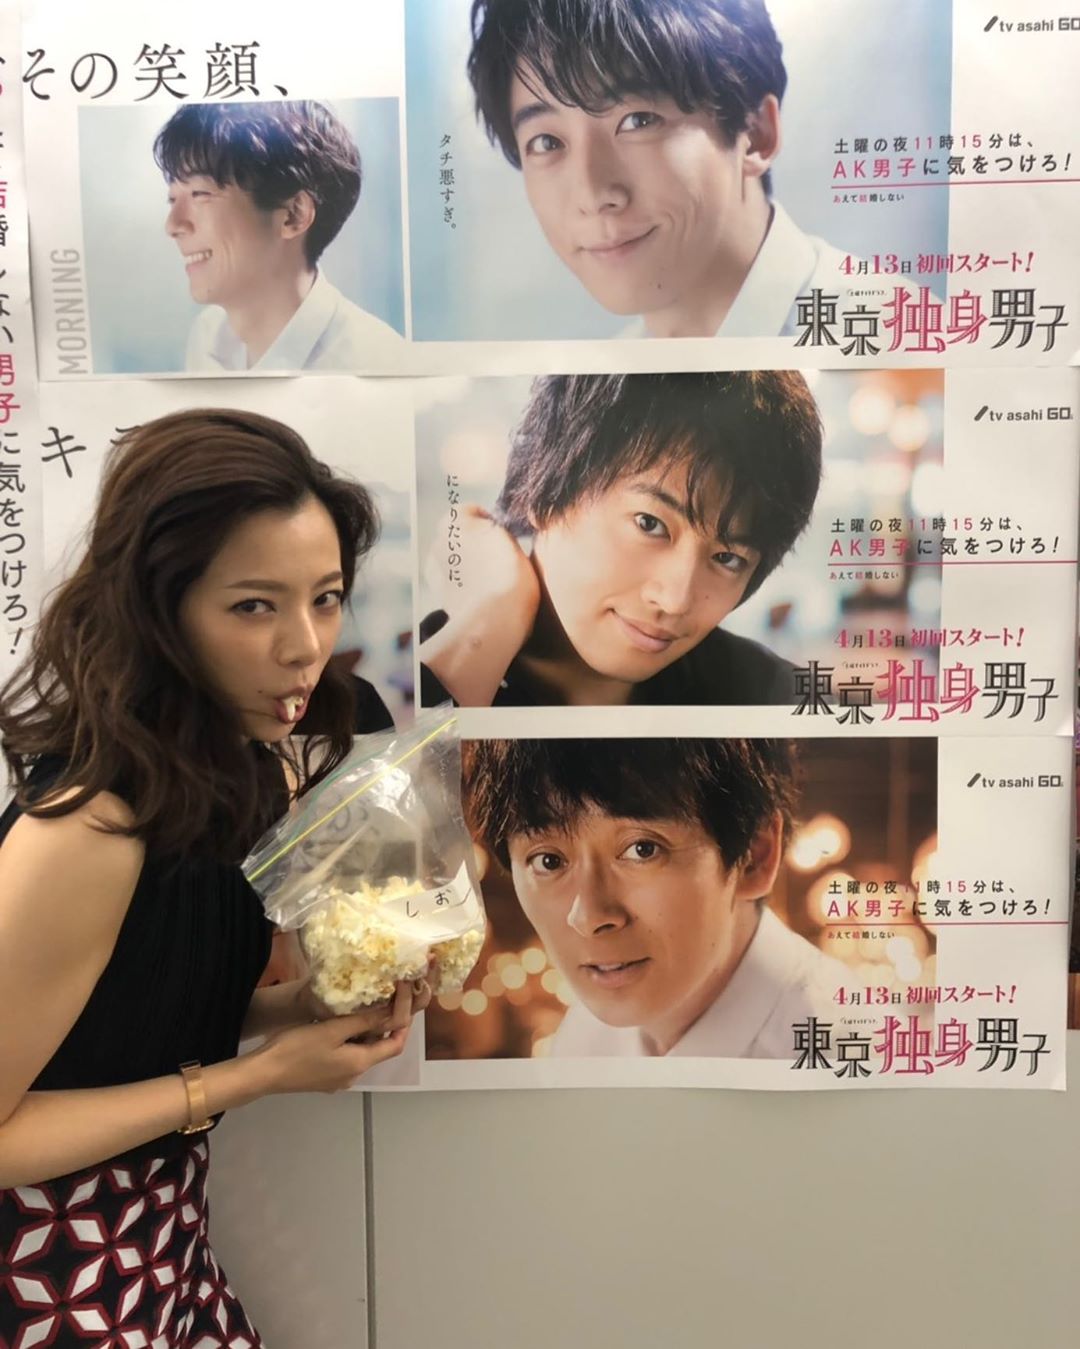 東京独身男子より ポスターの前でポップコーンを食べる桜井ユキ あげてけ